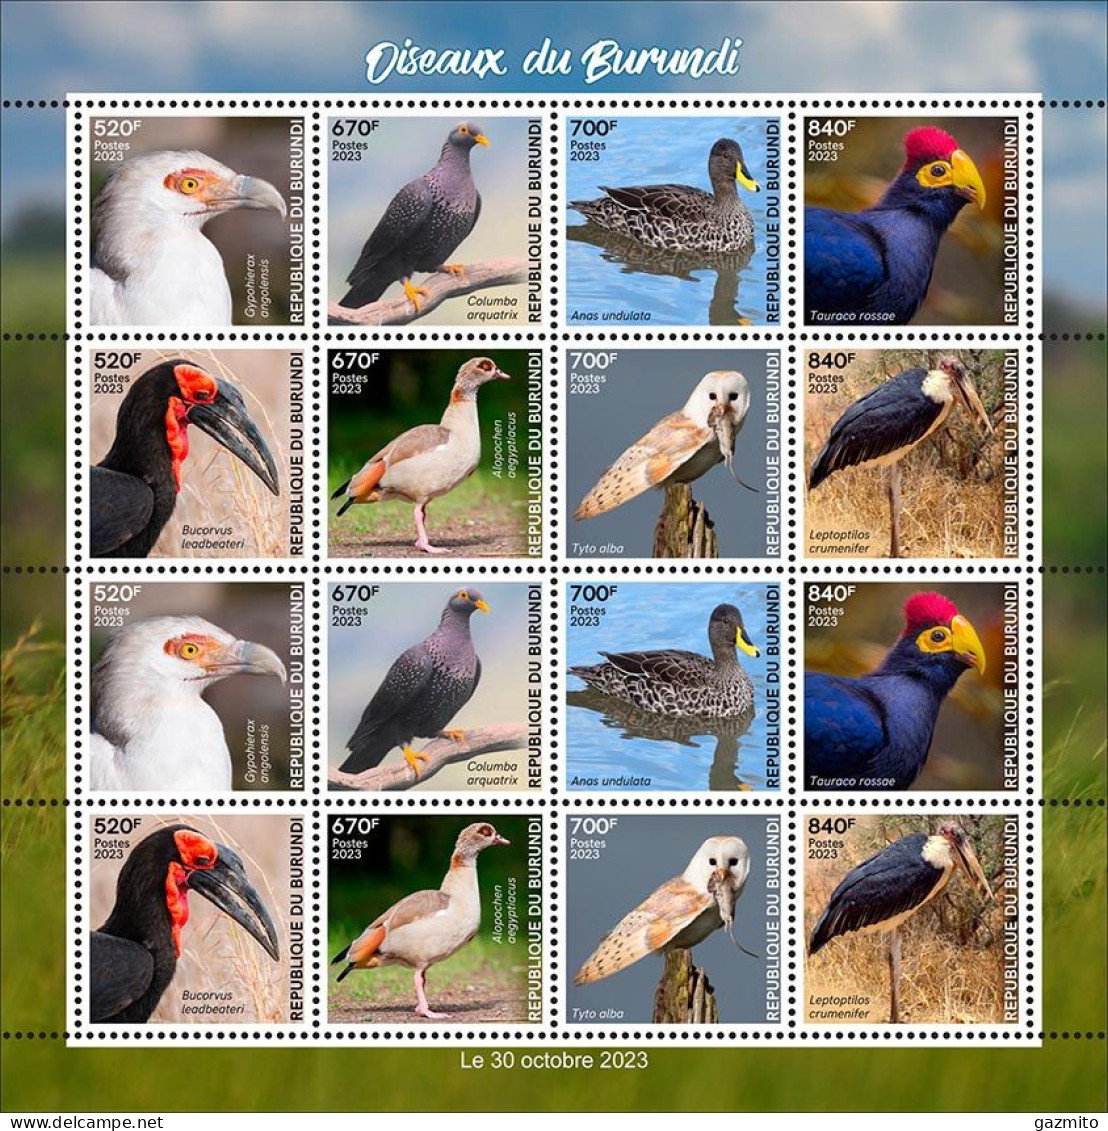 Burundi 2023, Birds Of Burundi, Duck, Owl, Henron, Sheetlet - Nuevos